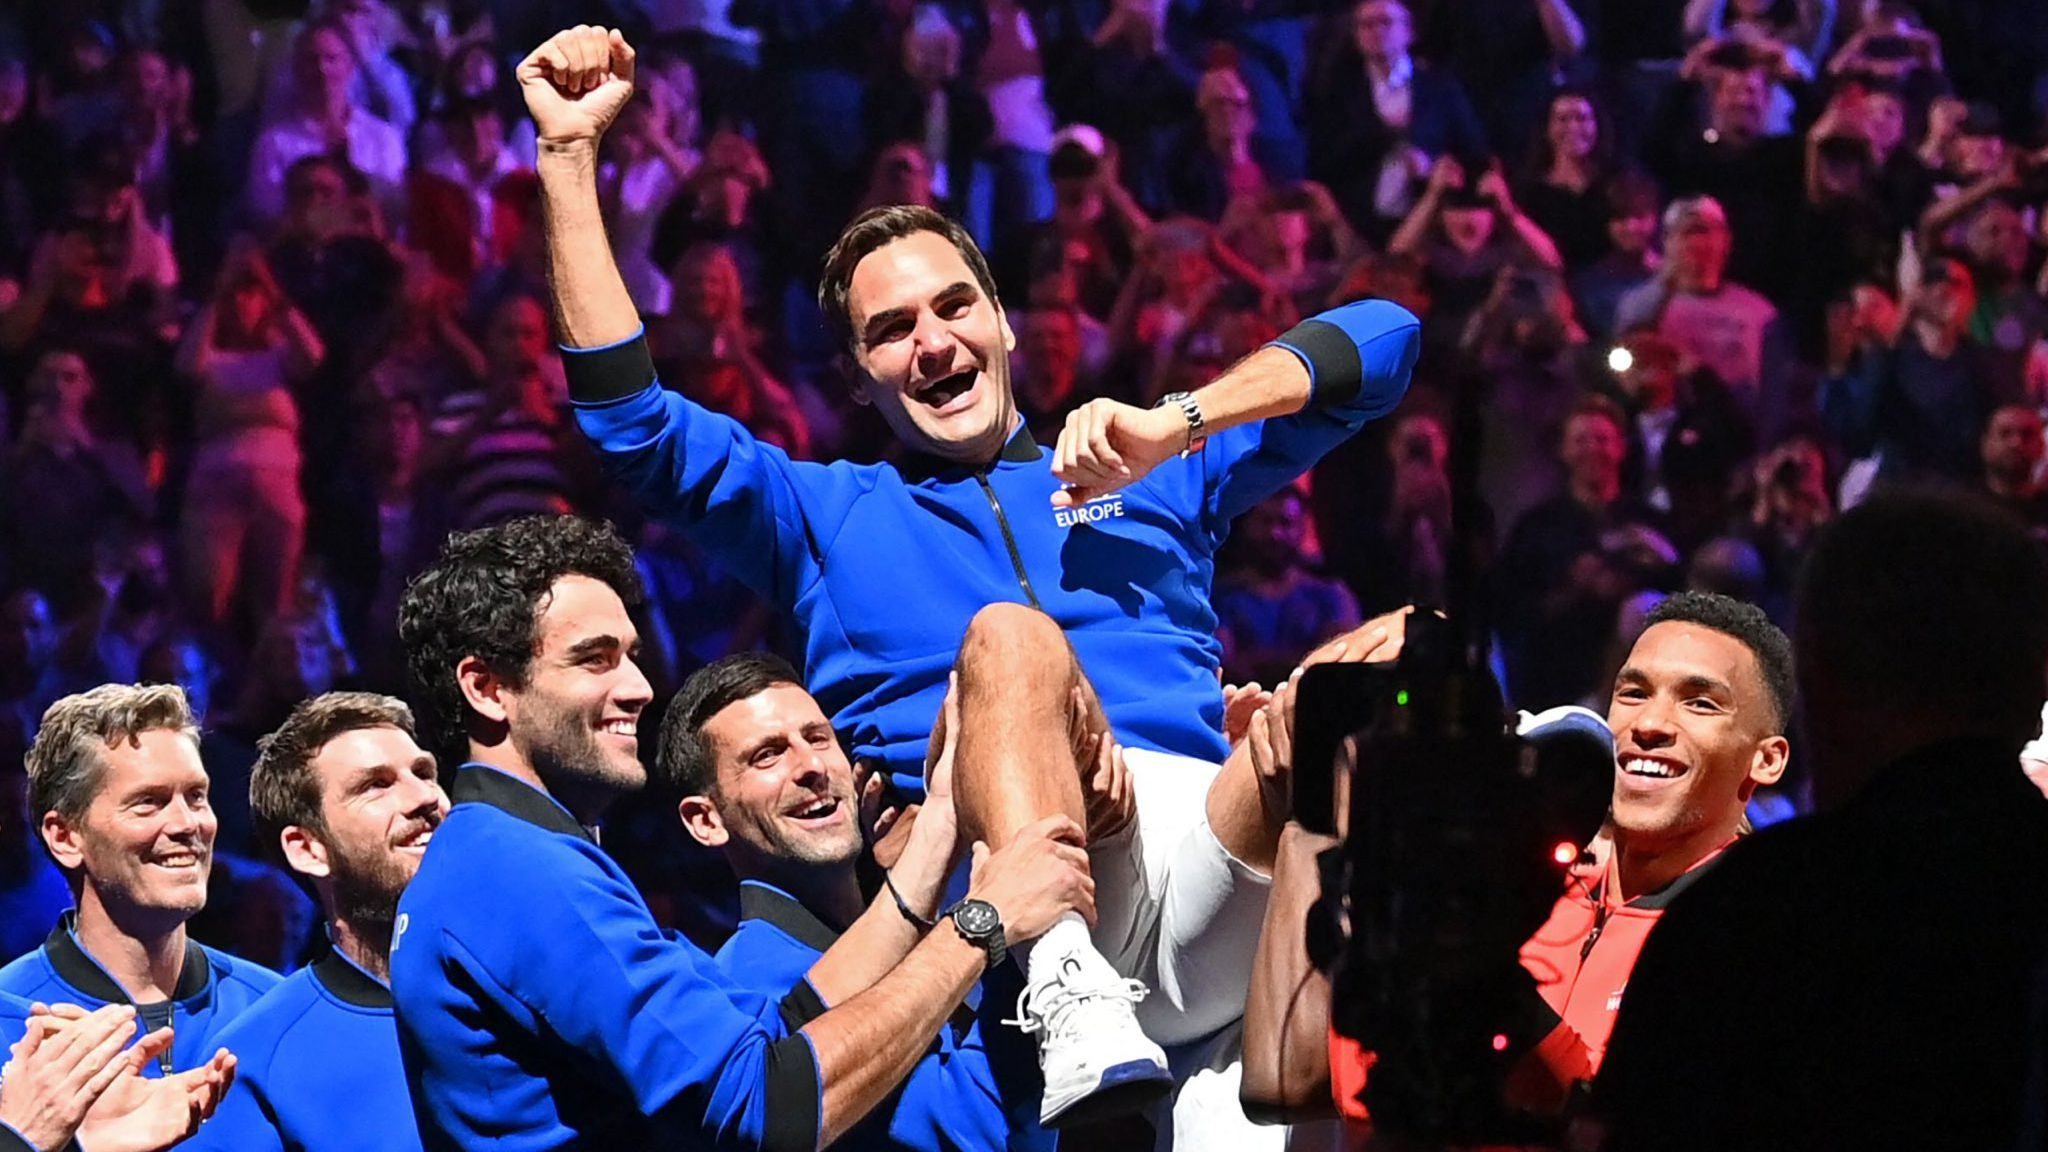 Roger Federer: Tökéletes utazás volt, ugyanígy végigcsinálnám megint